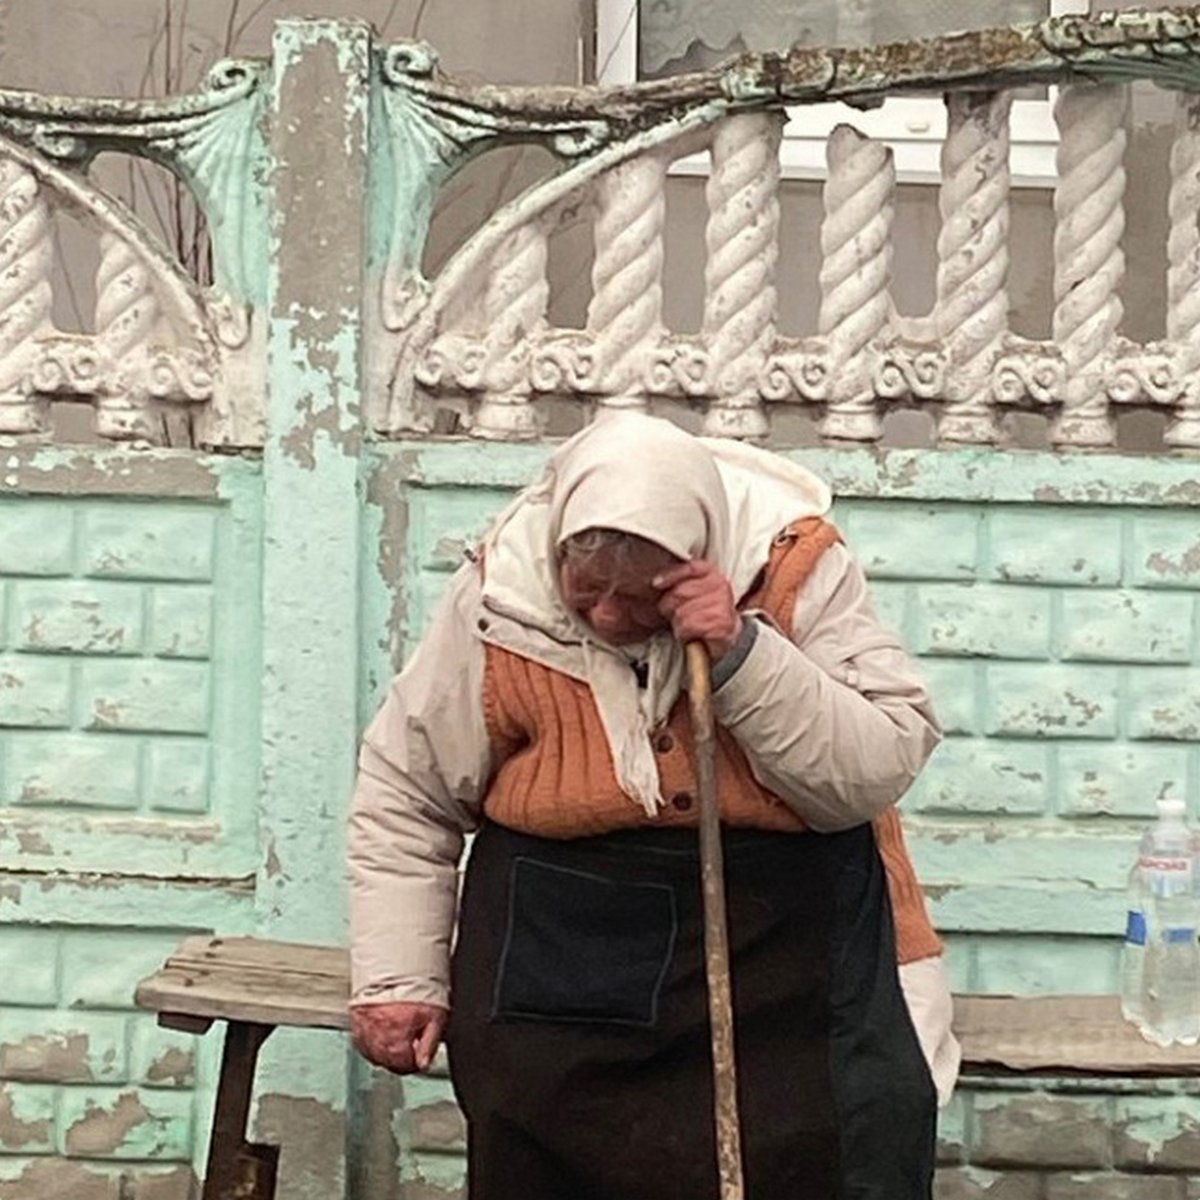 Ces photos dépeignent les histoires les plus déchirantes de la guerre en Ukraine